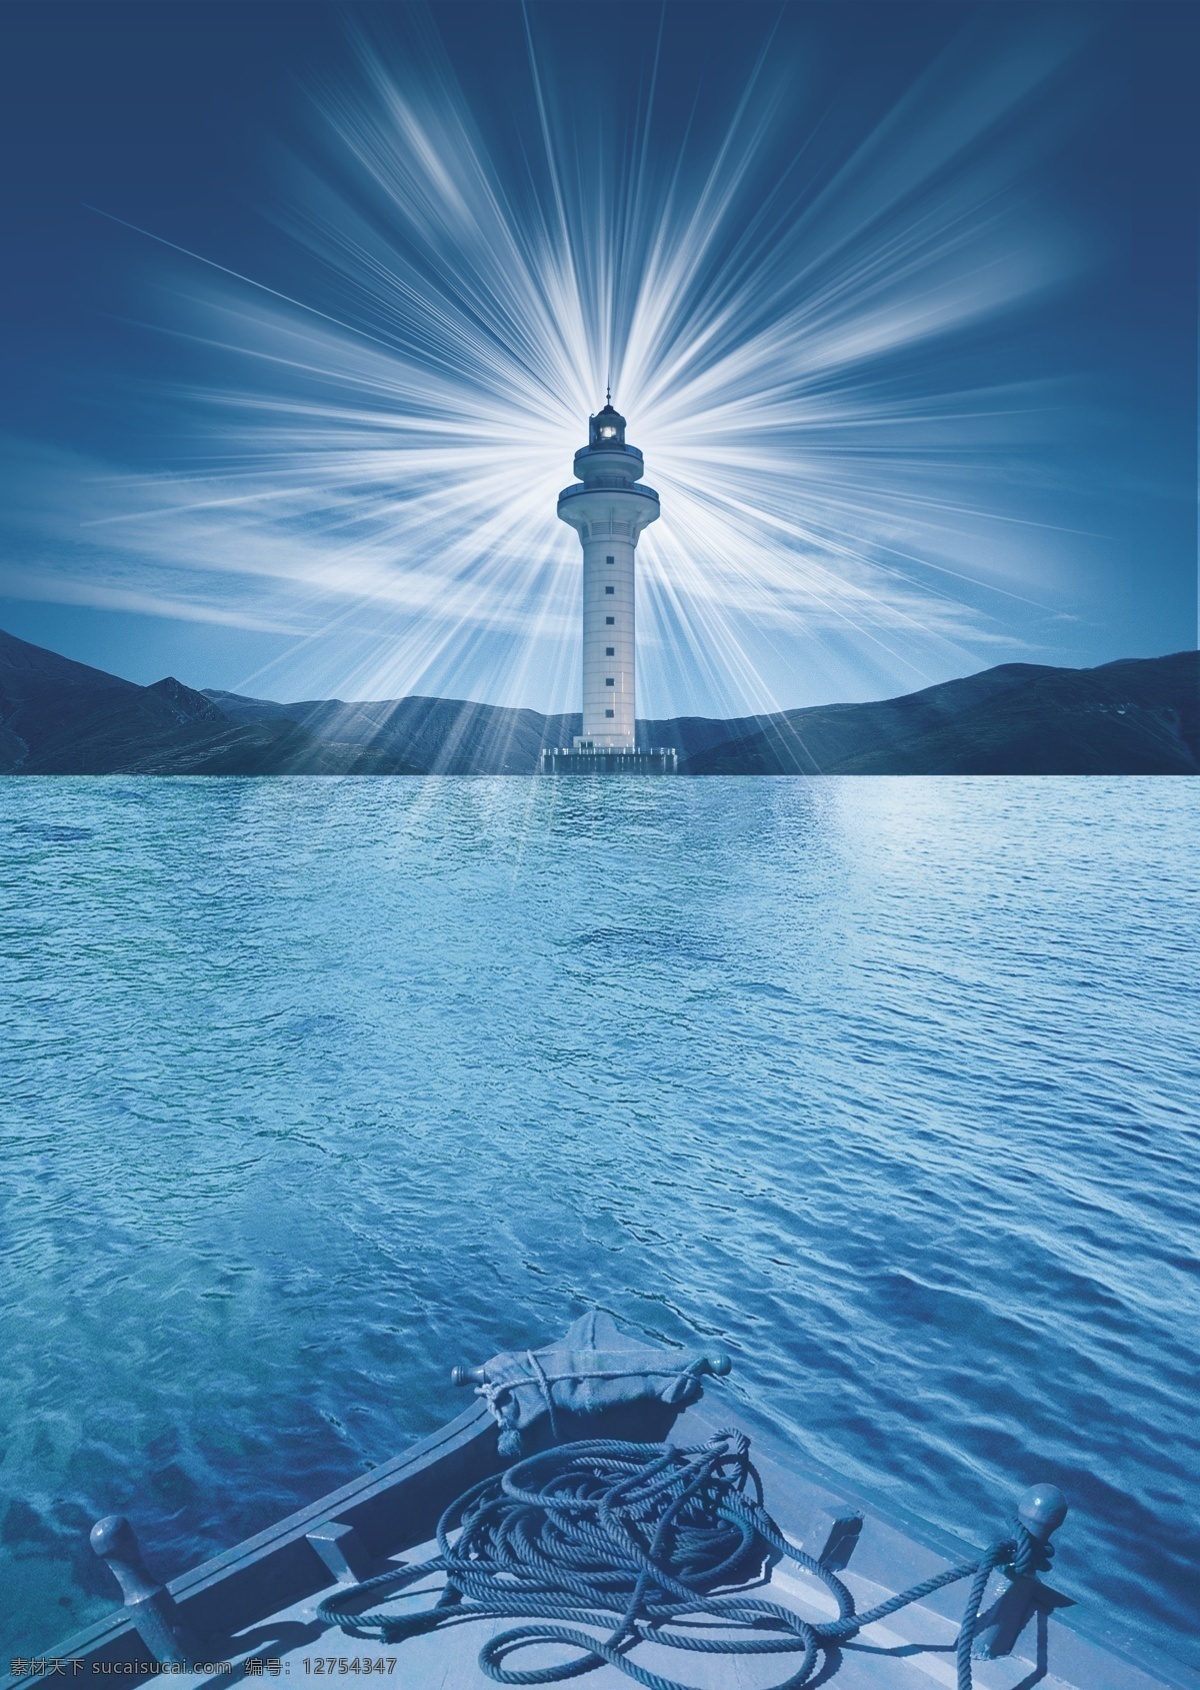 指明灯塔 灯塔 光芒 大海 船头 海岸 光线 广告设计模板 源文件